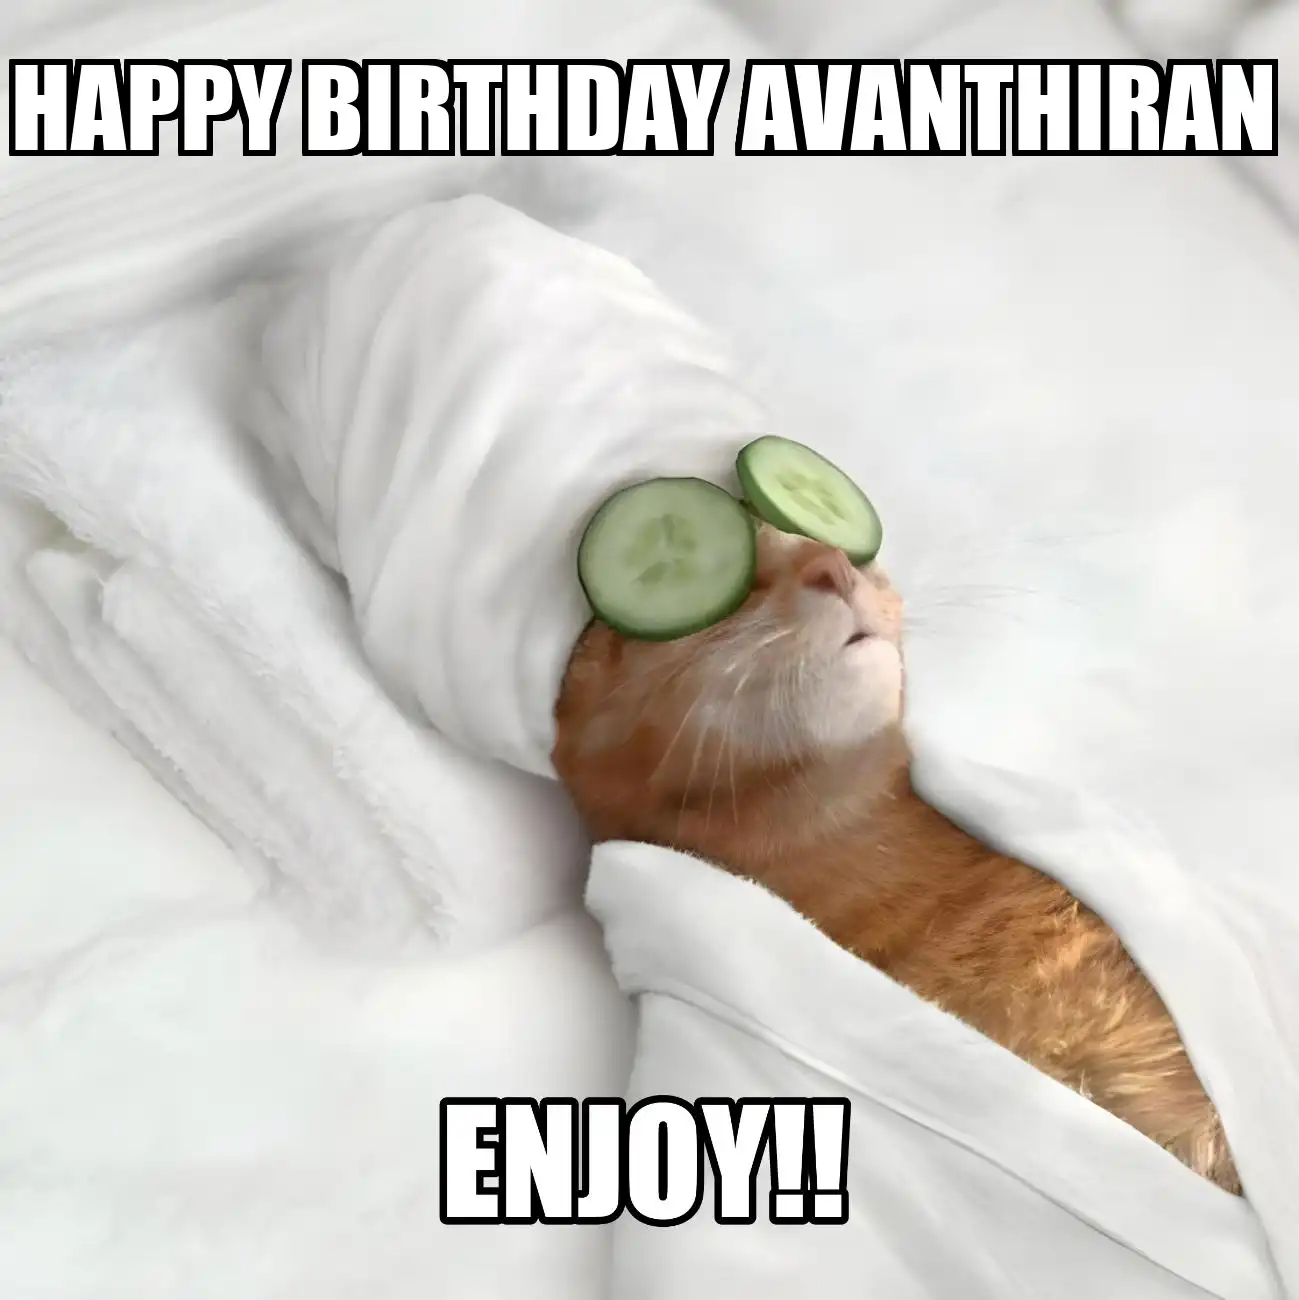 Happy Birthday Avanthiran Enjoy Cat Meme